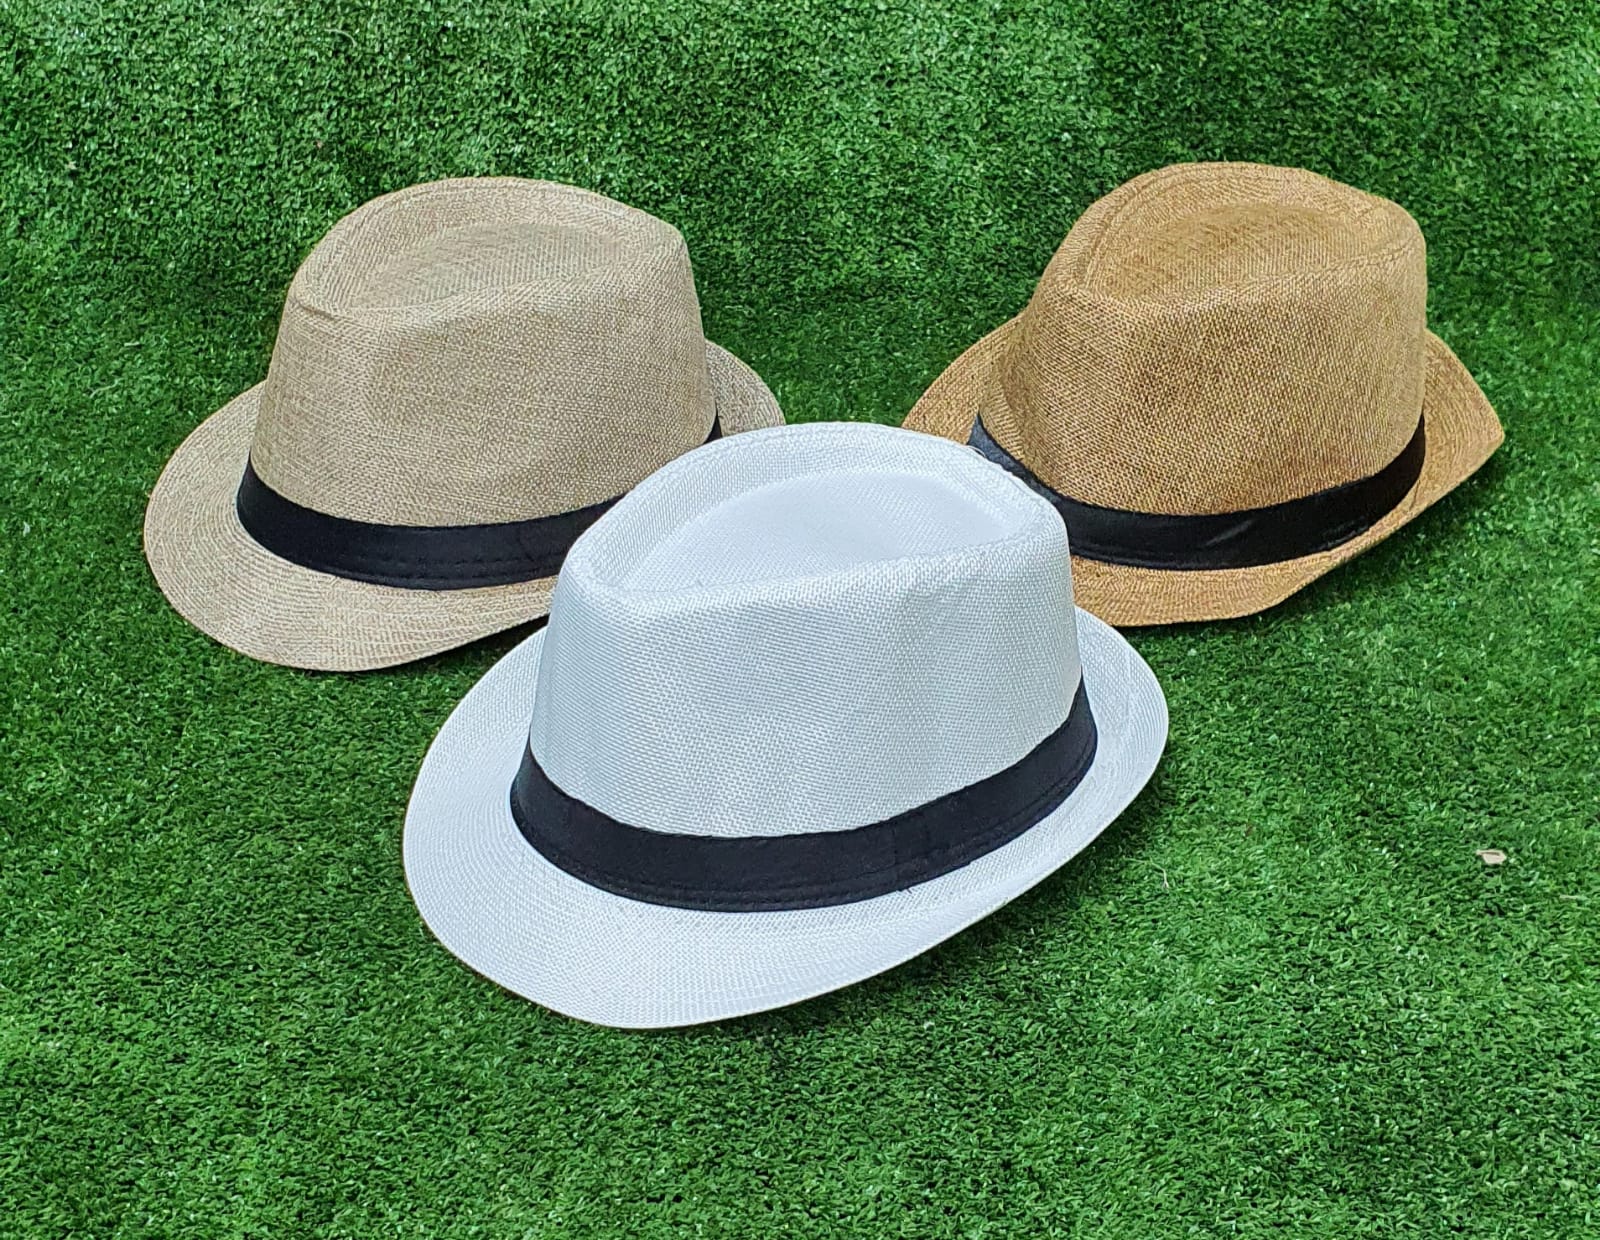 כובע אלגנט. 
כובע בד איכותי בתוספת סרט.
מידת מבוגר או ילד.
מתאים לאירועים ולשימוש יומיומי ולהגנה מפני השמש.